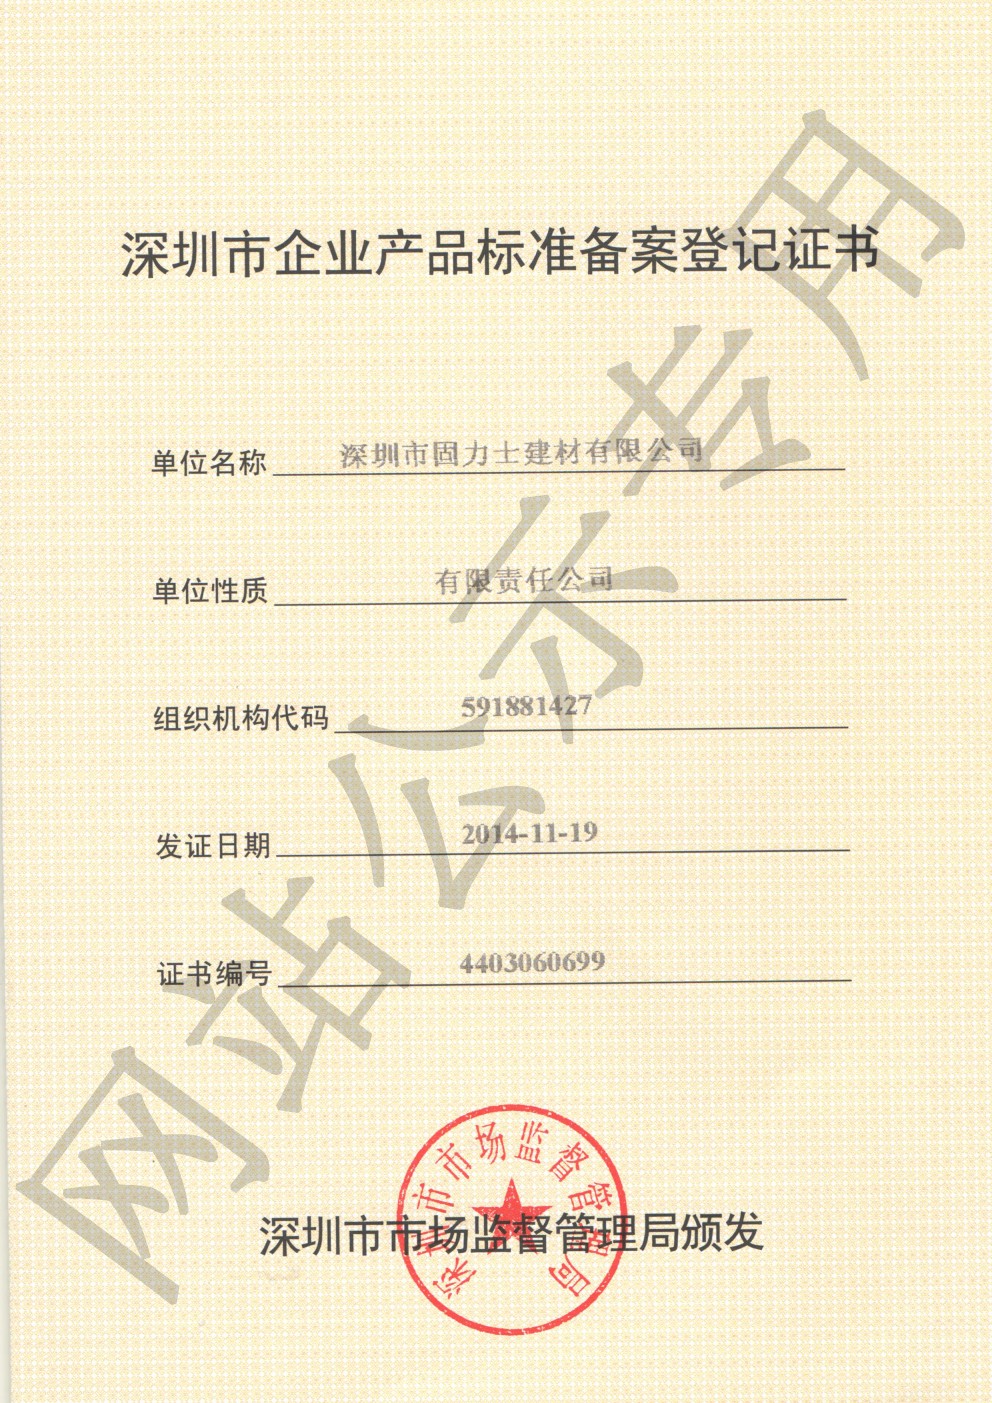 嘉陵企业产品标准登记证书